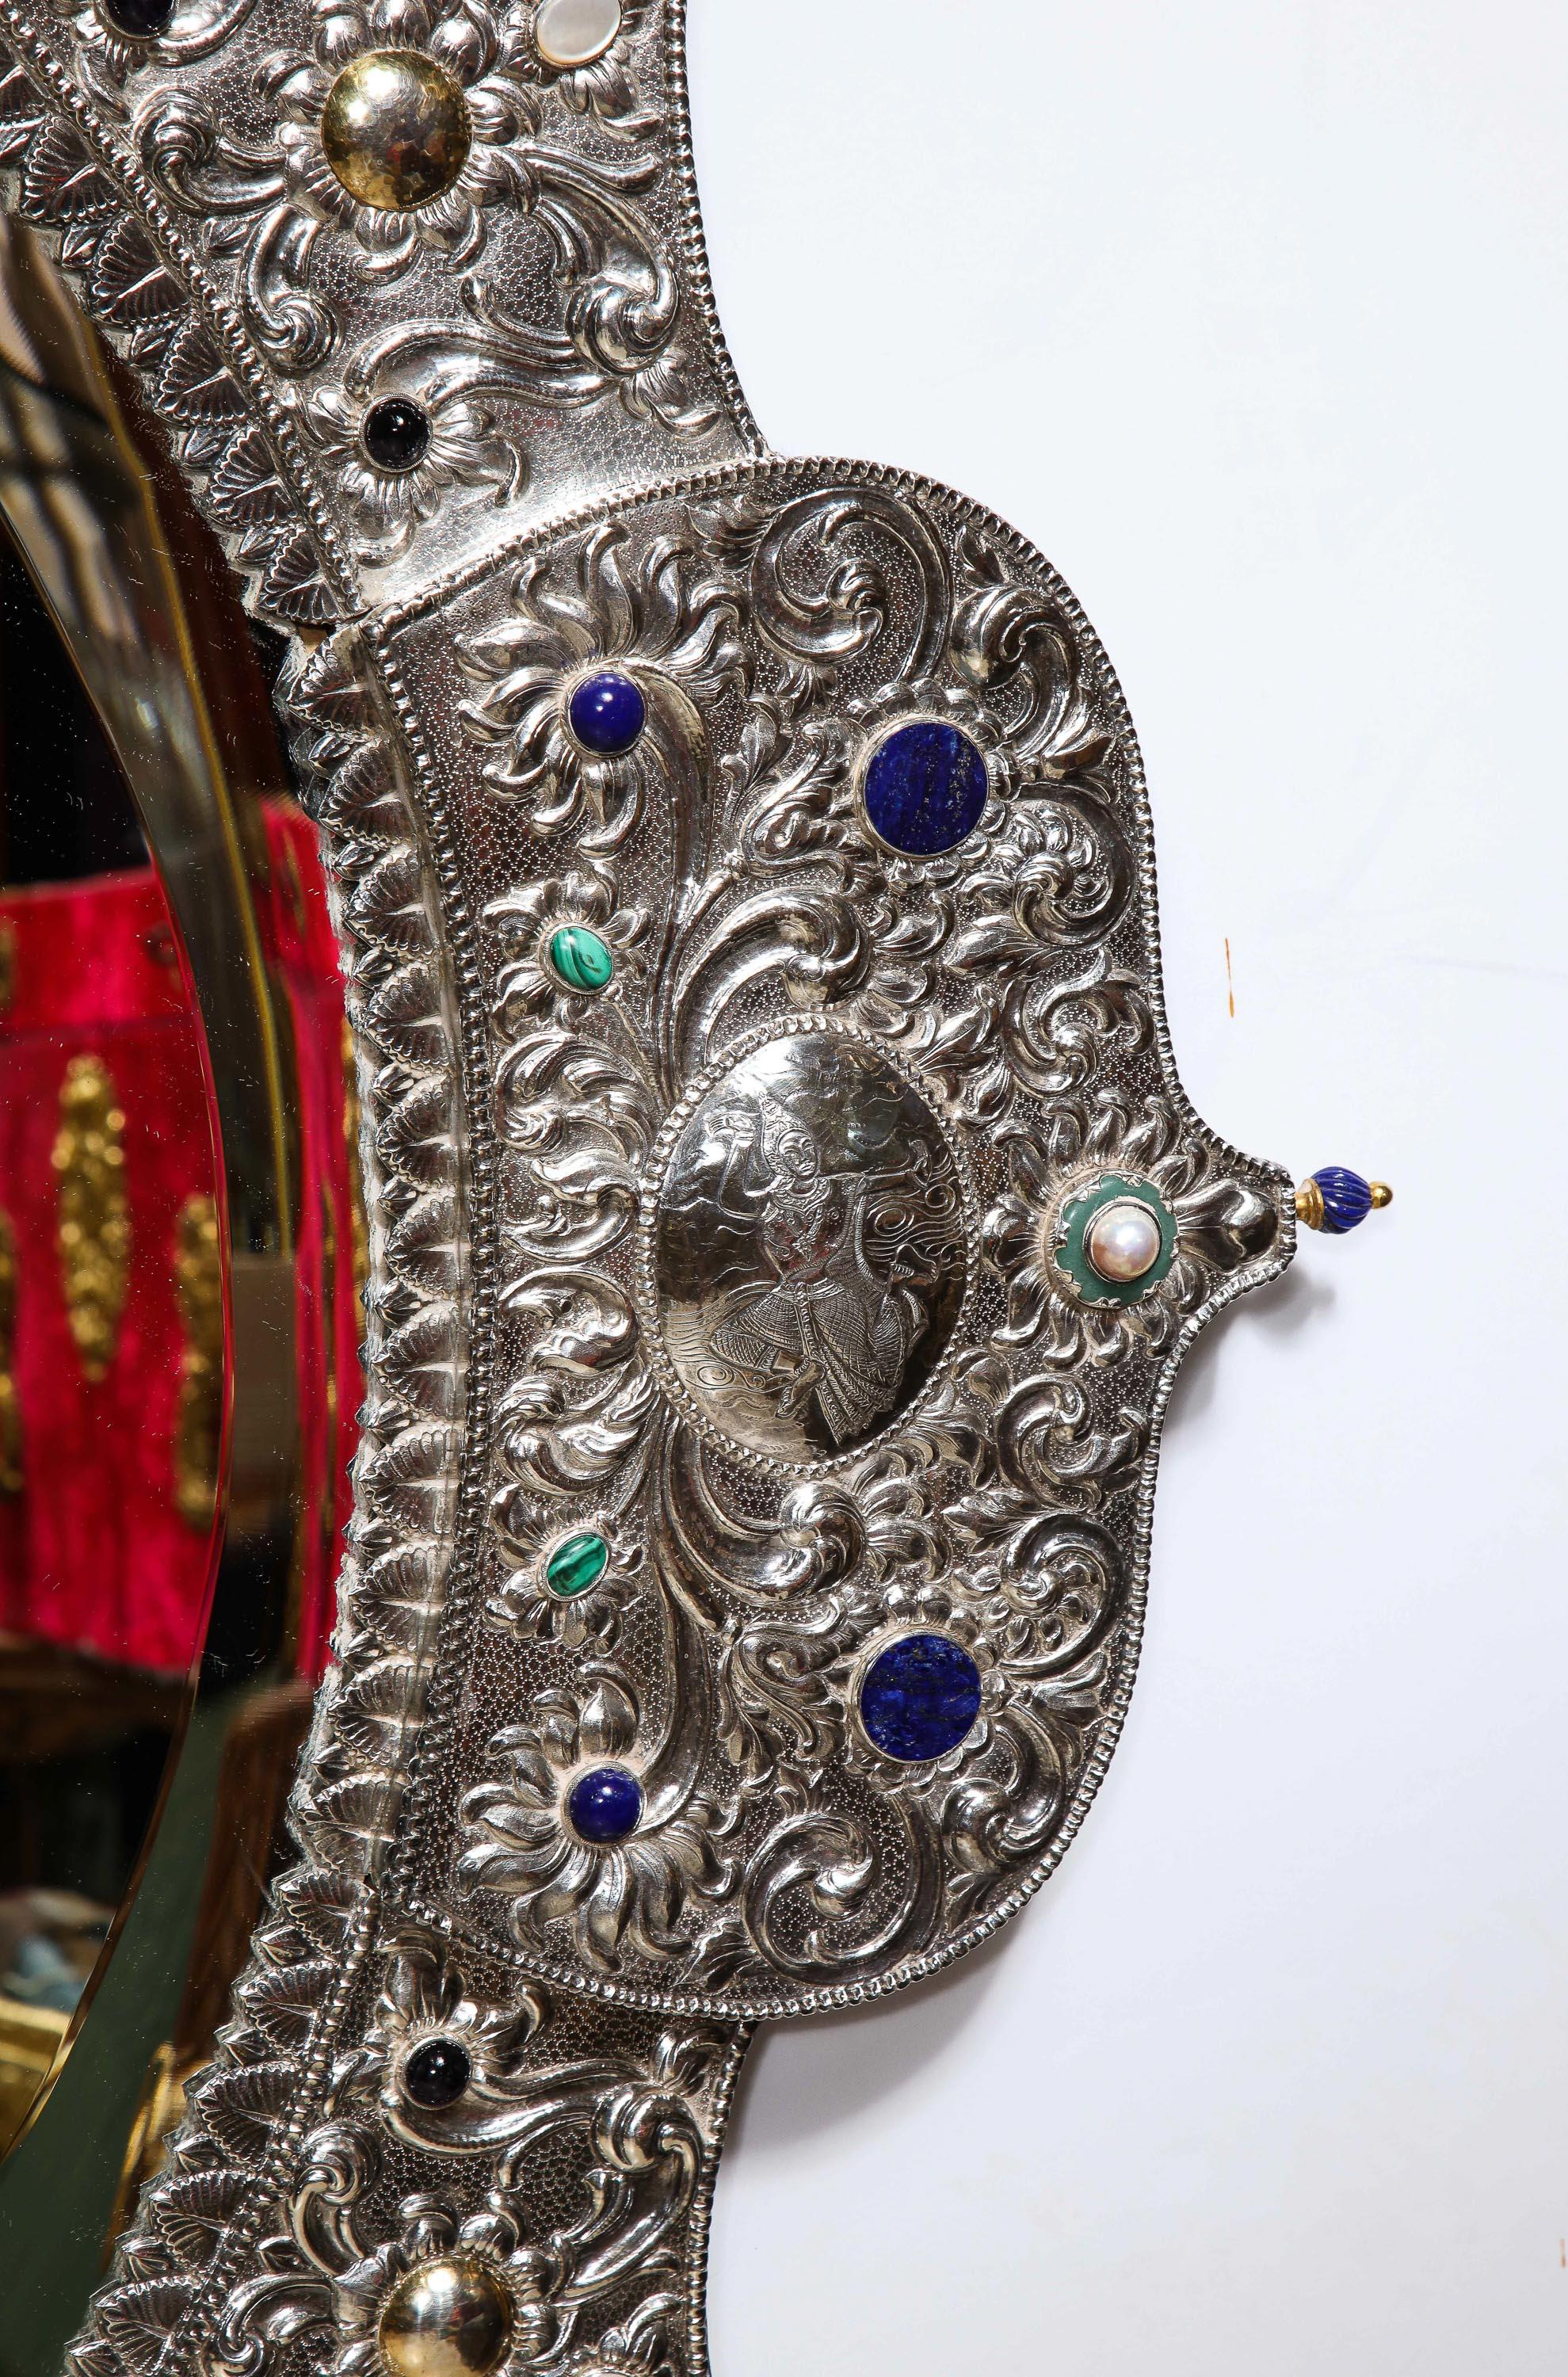 Rare et magnifique miroir de palais en argent, or et bijoux, certainement réalisé pour un maharaja indien, vers 1900.

Une commande spéciale pour un palais indien de la fin de l'ère victorienne, probablement produite en Thaïlande. 

Ce miroir indien